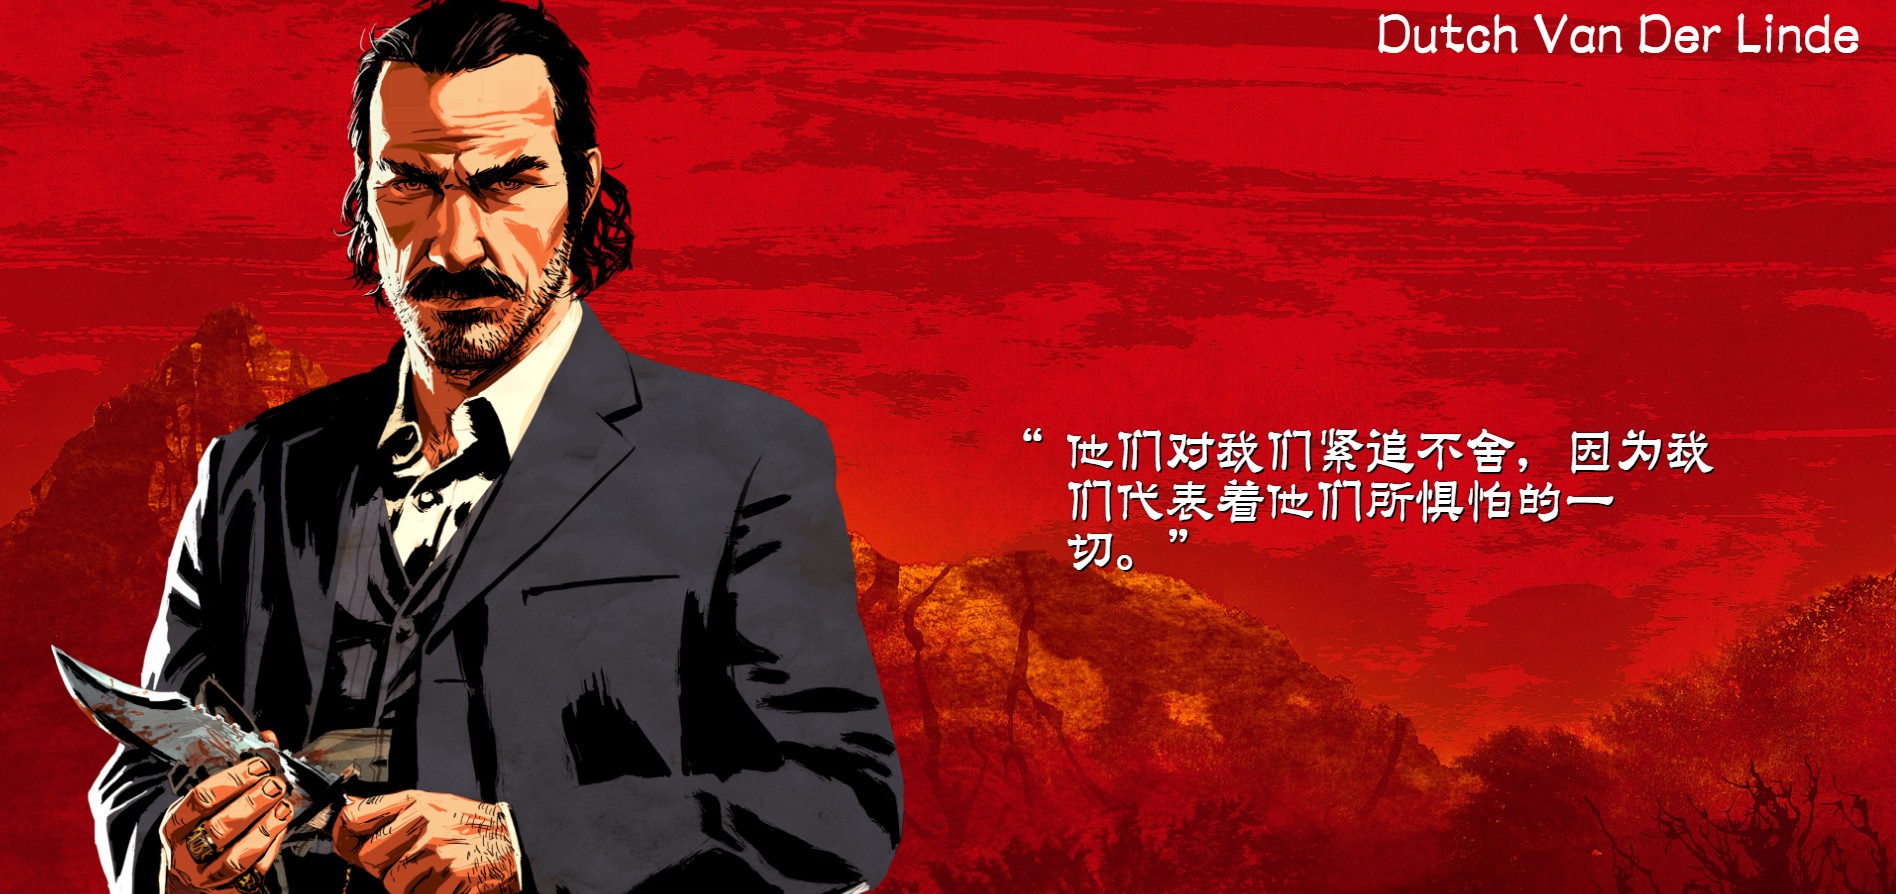 《荒野大镖客2》主角中文海报公布 身份背景揭晓